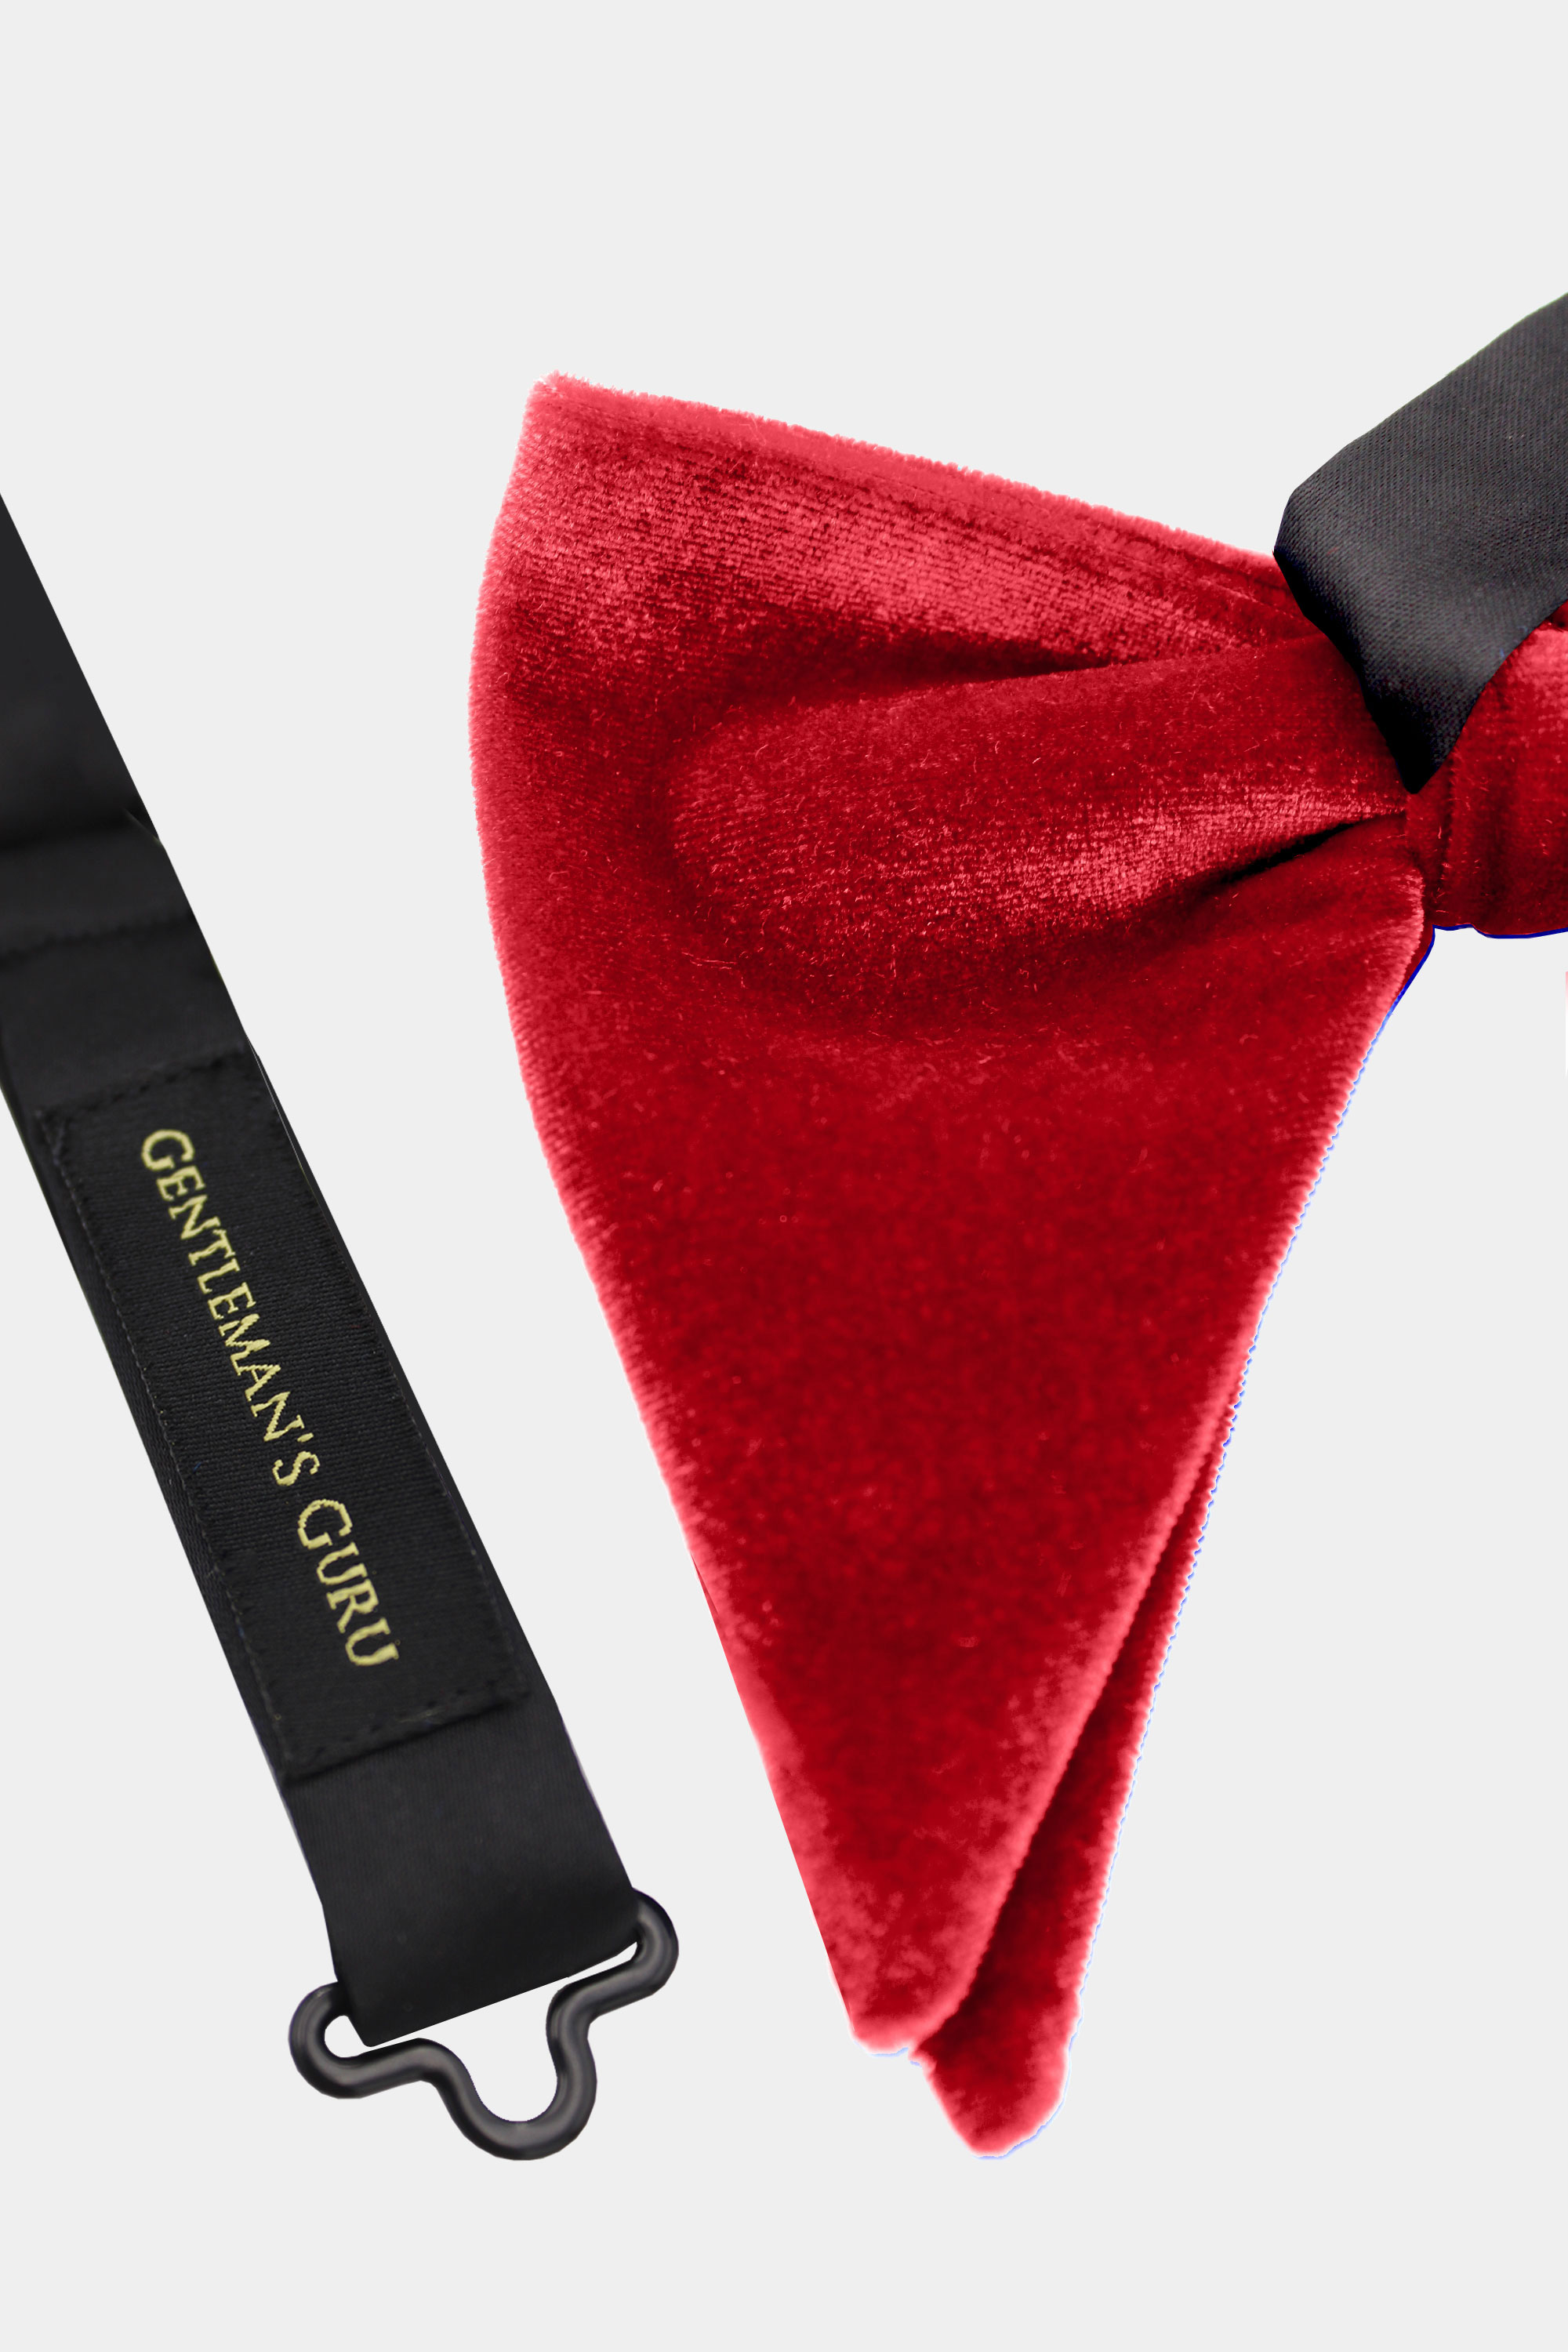 Red-Velvet-Bow-Tie-from-Gentlemansguru.com